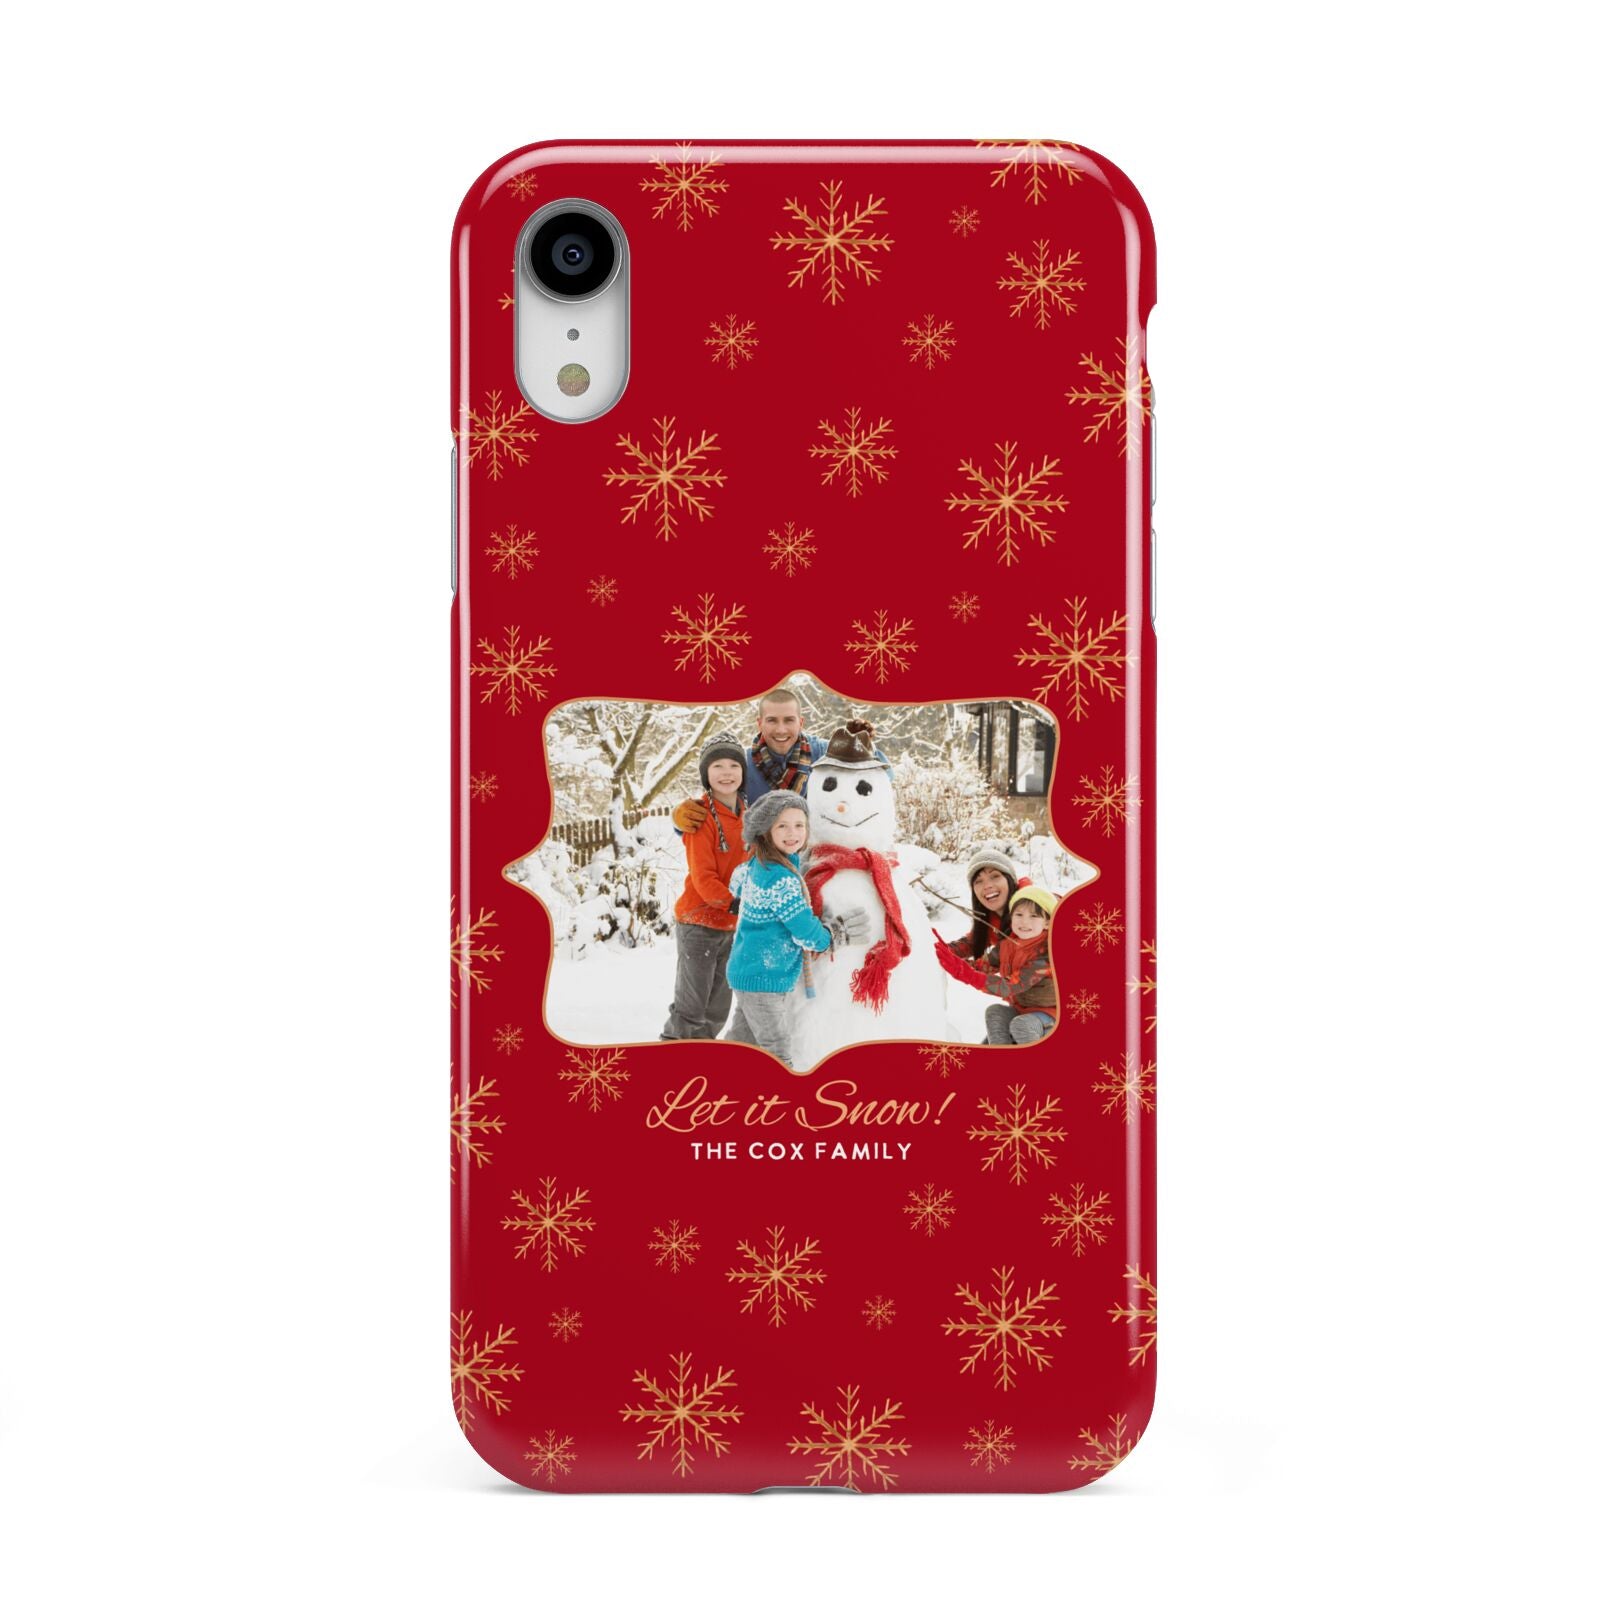 Let it Snow Christmas Photo Upload Apple iPhone XR White 3D Tough Case